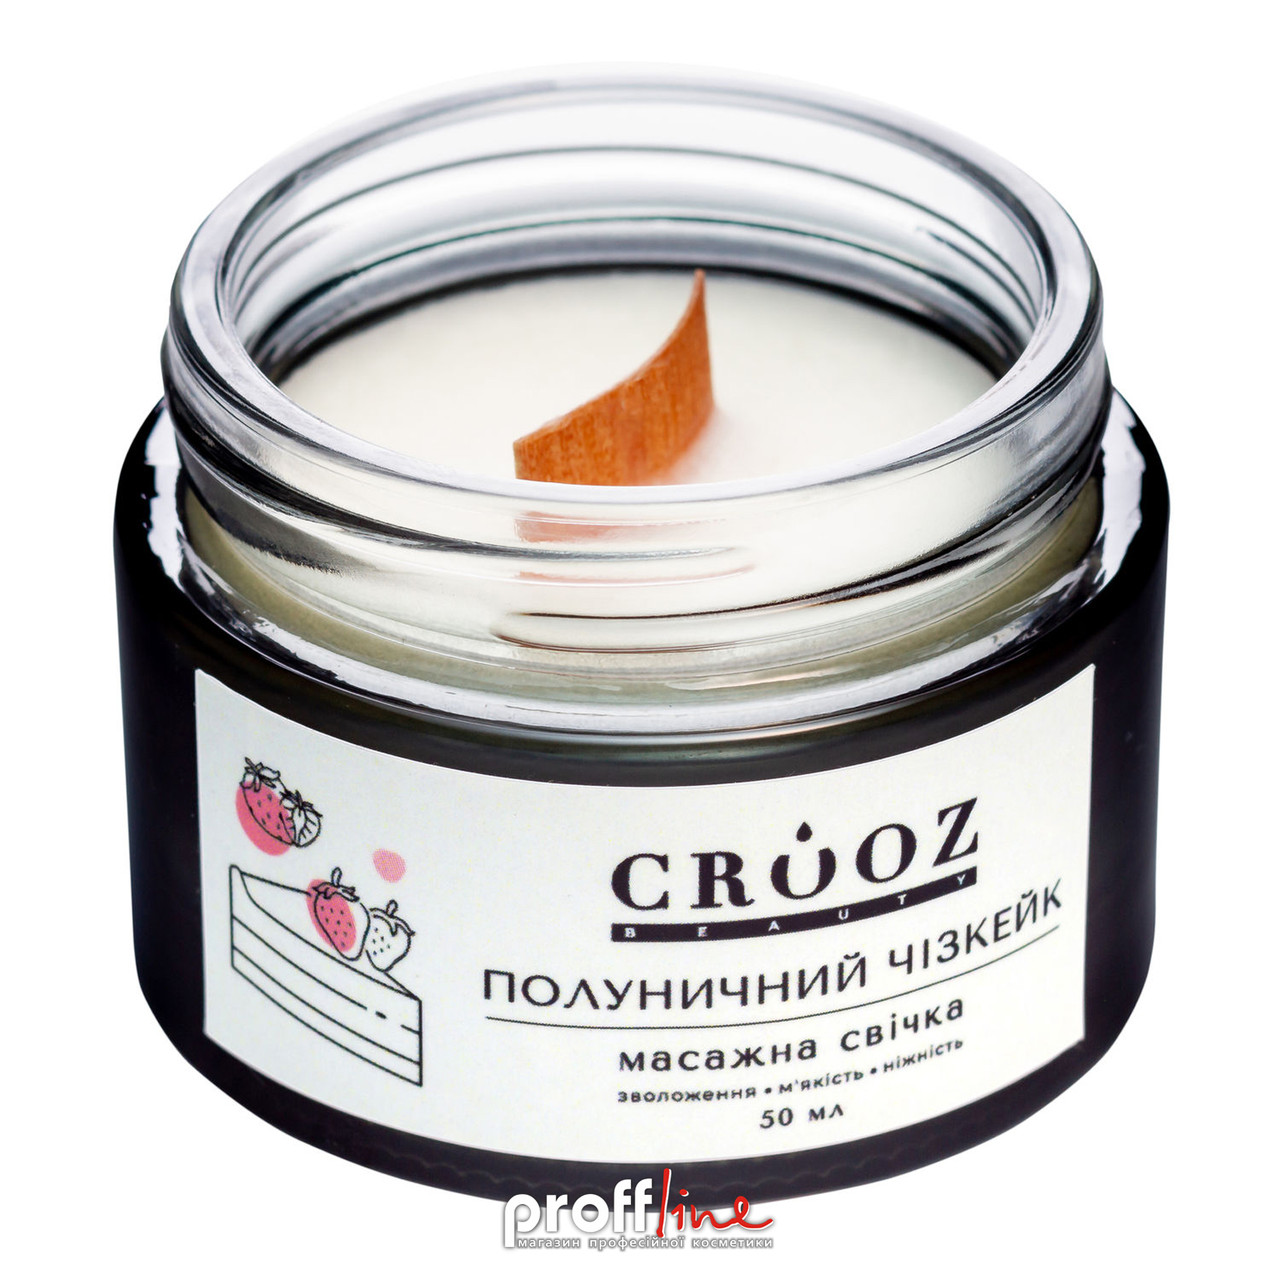 Масажна свічка Crooz з ароматом Полуничний чізкейк 50 мл